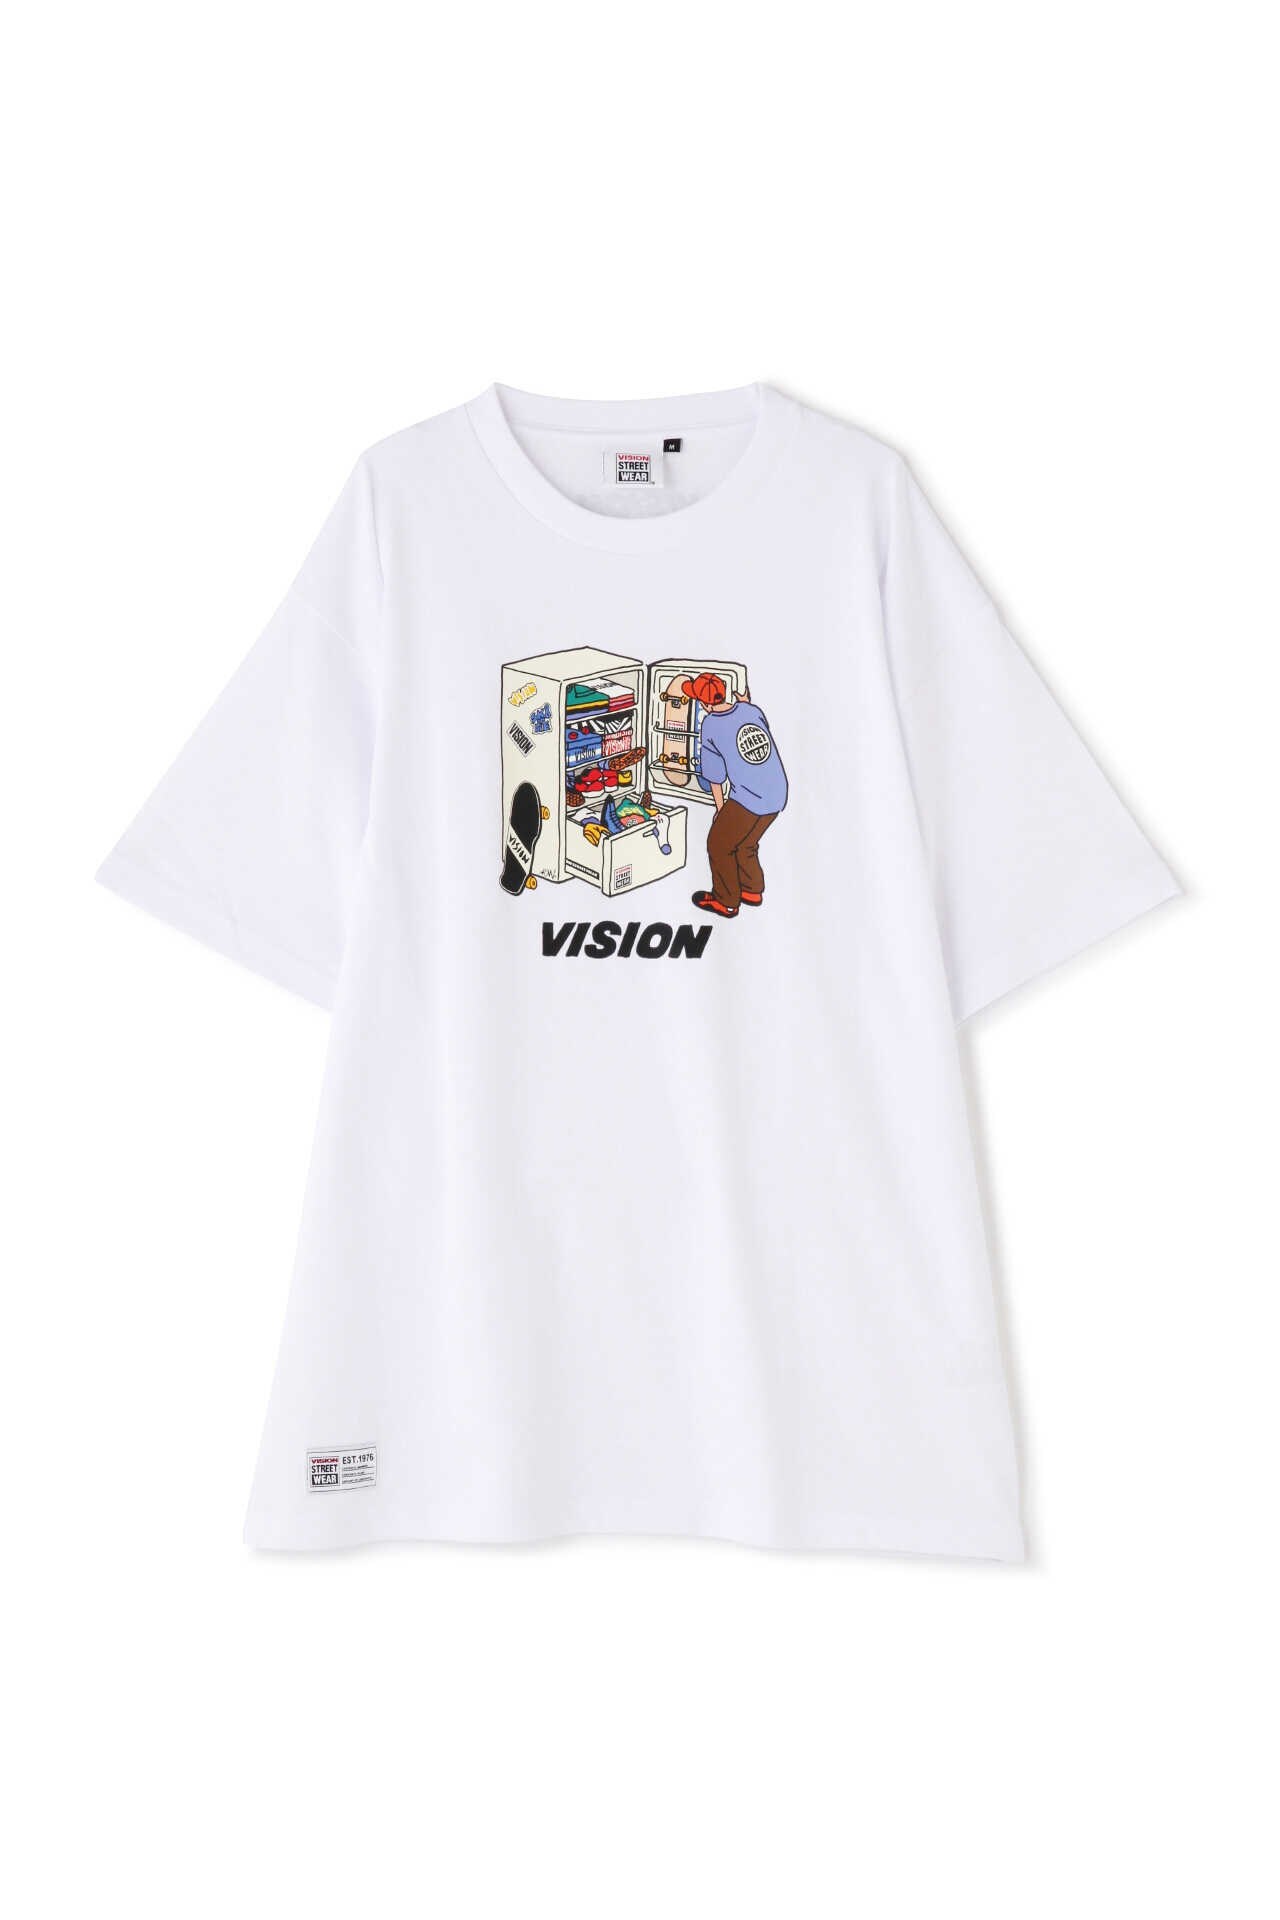 VISION Tシャツ